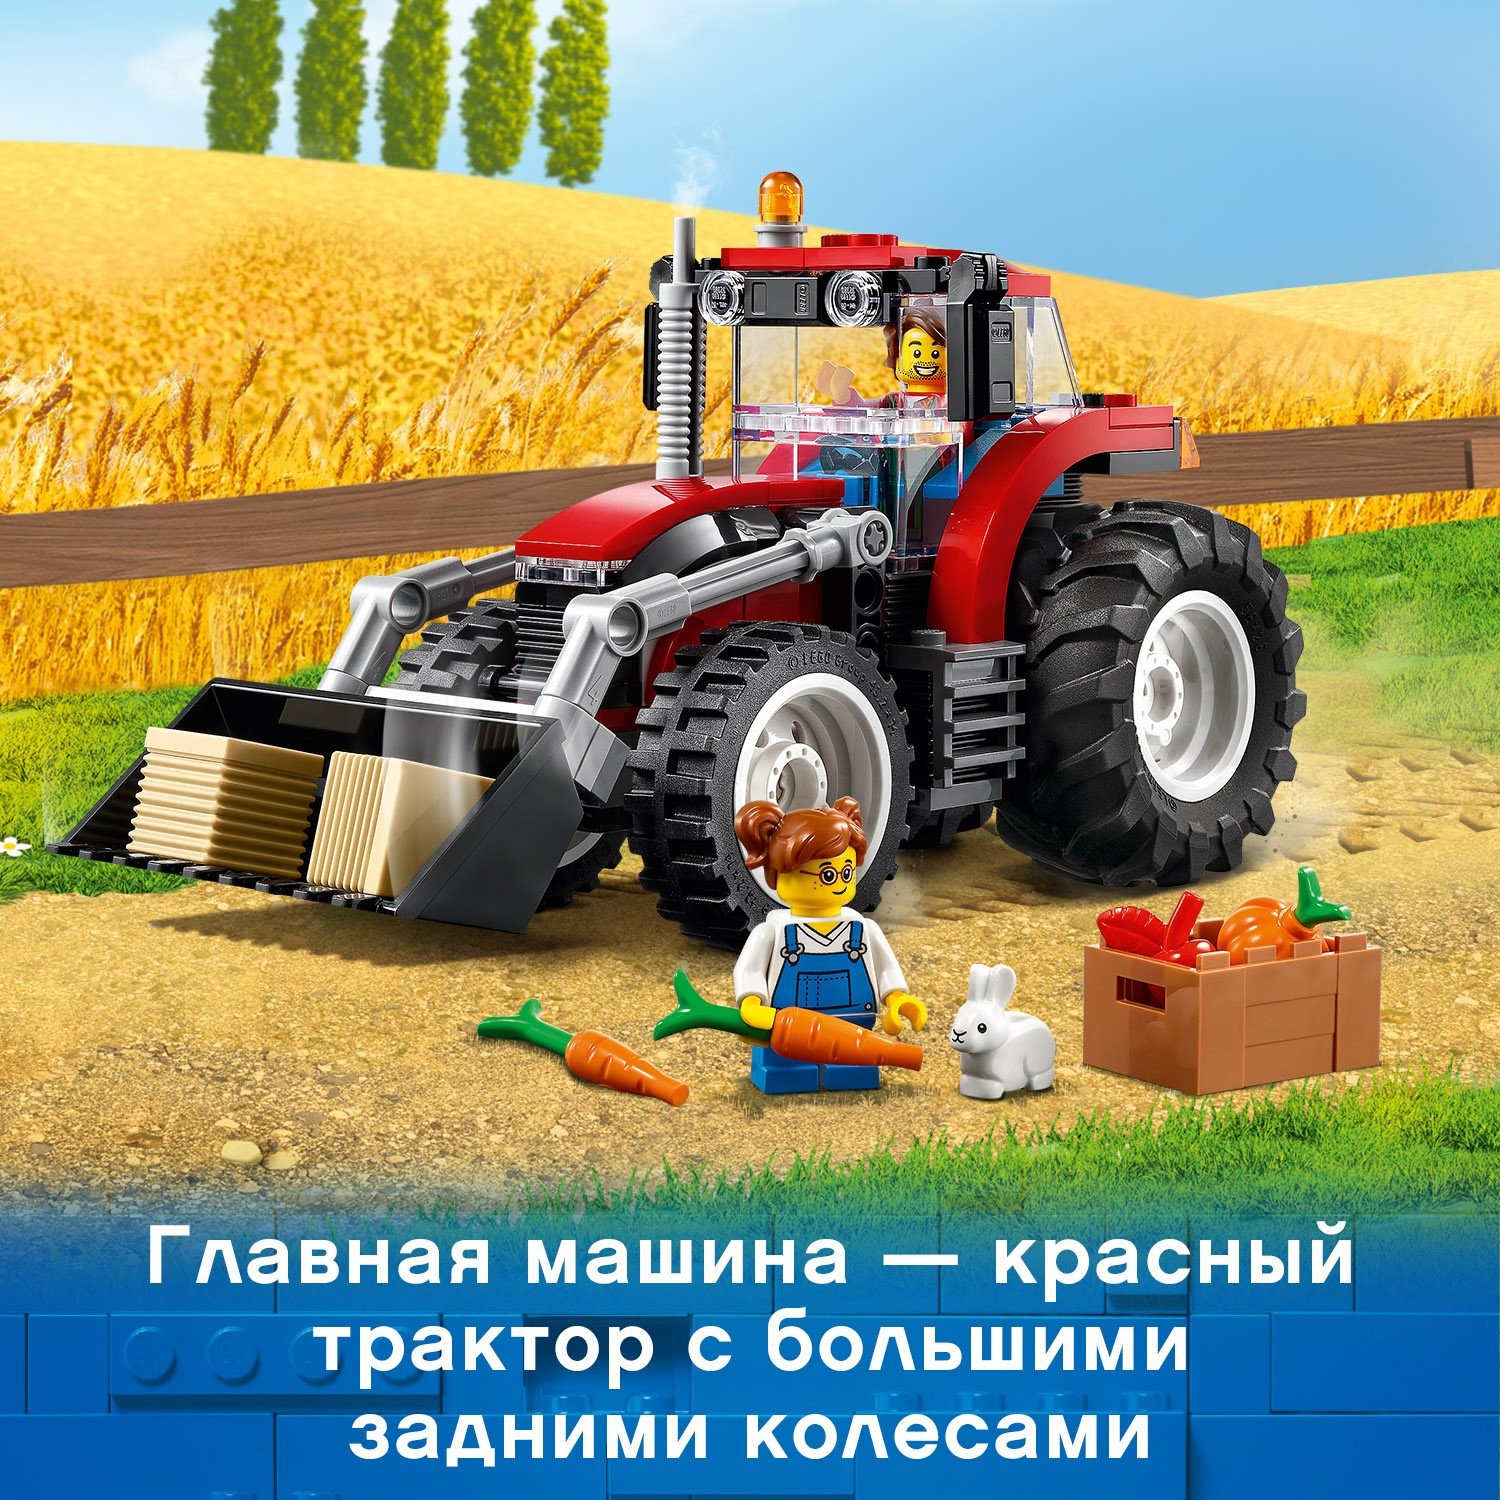 Lego City 60287 Трактор